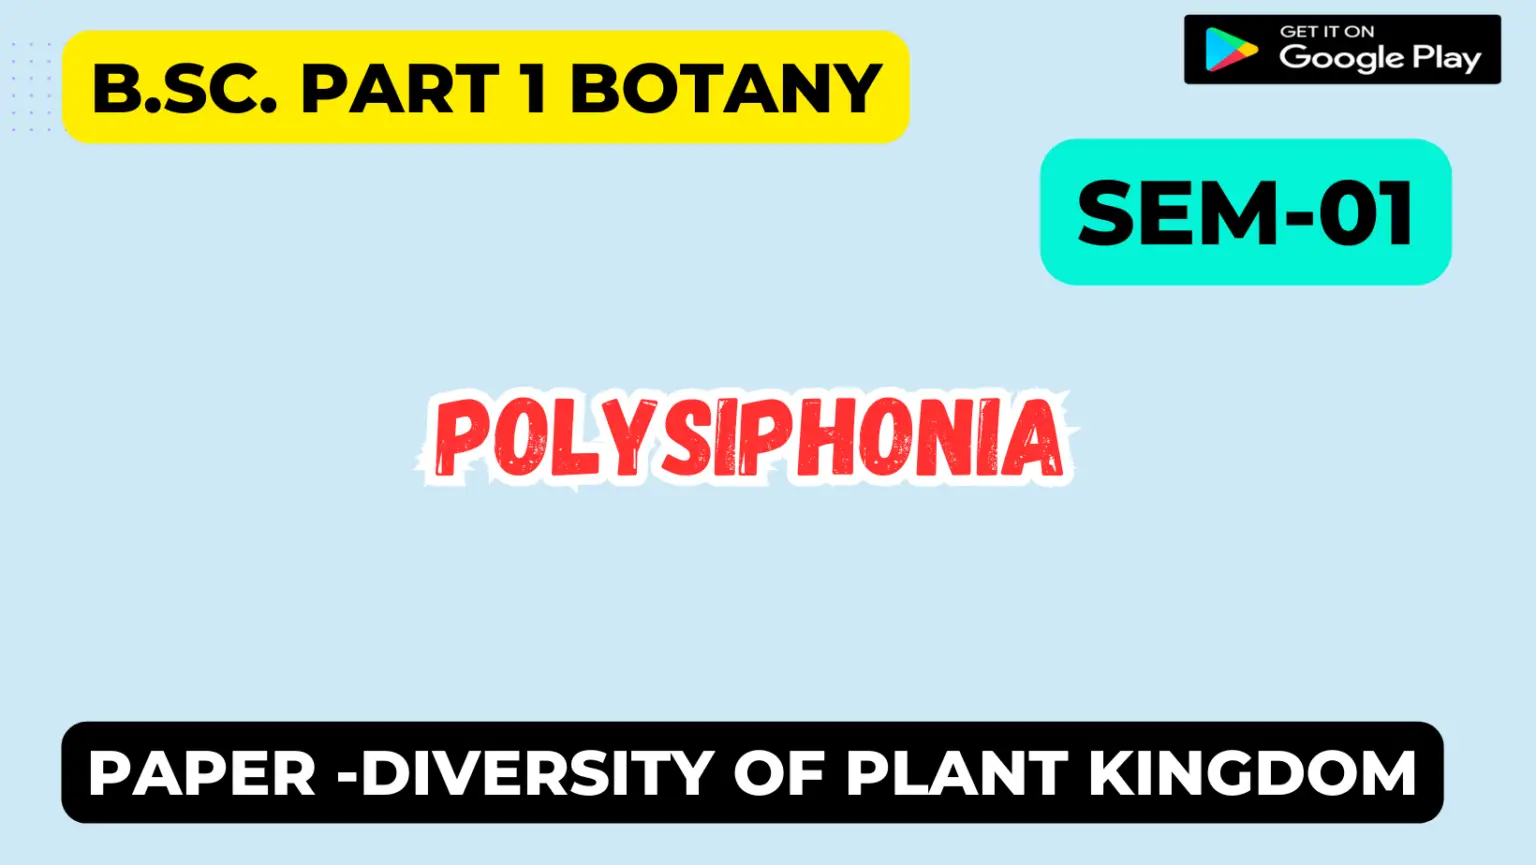 Polysiphonia